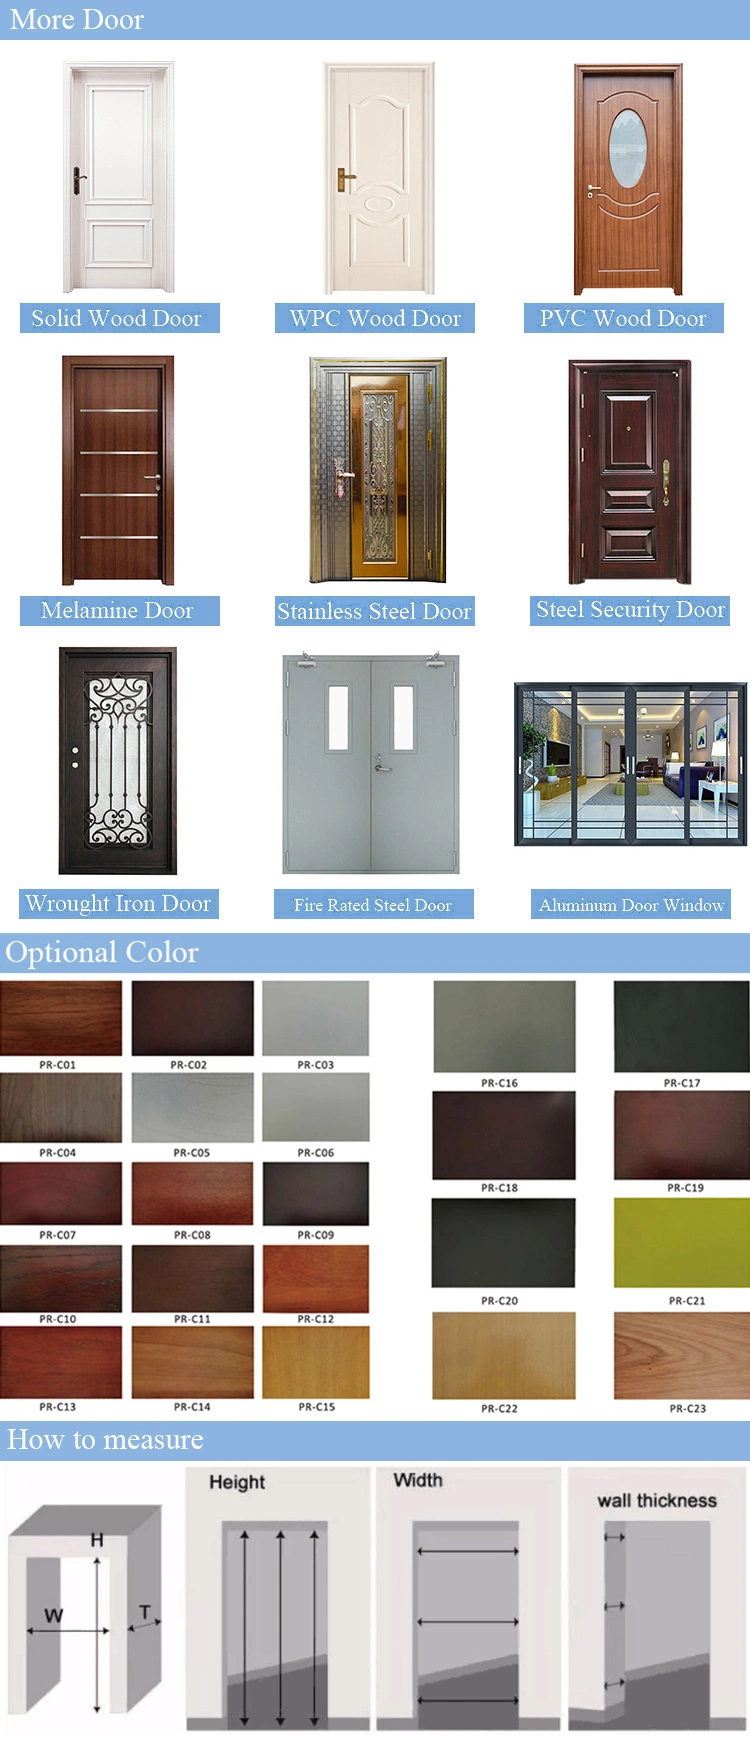 Prima Door Outdoor WPC Doors Interior New Style Solid Wood Door Interior Industrial Frameless Door Interior